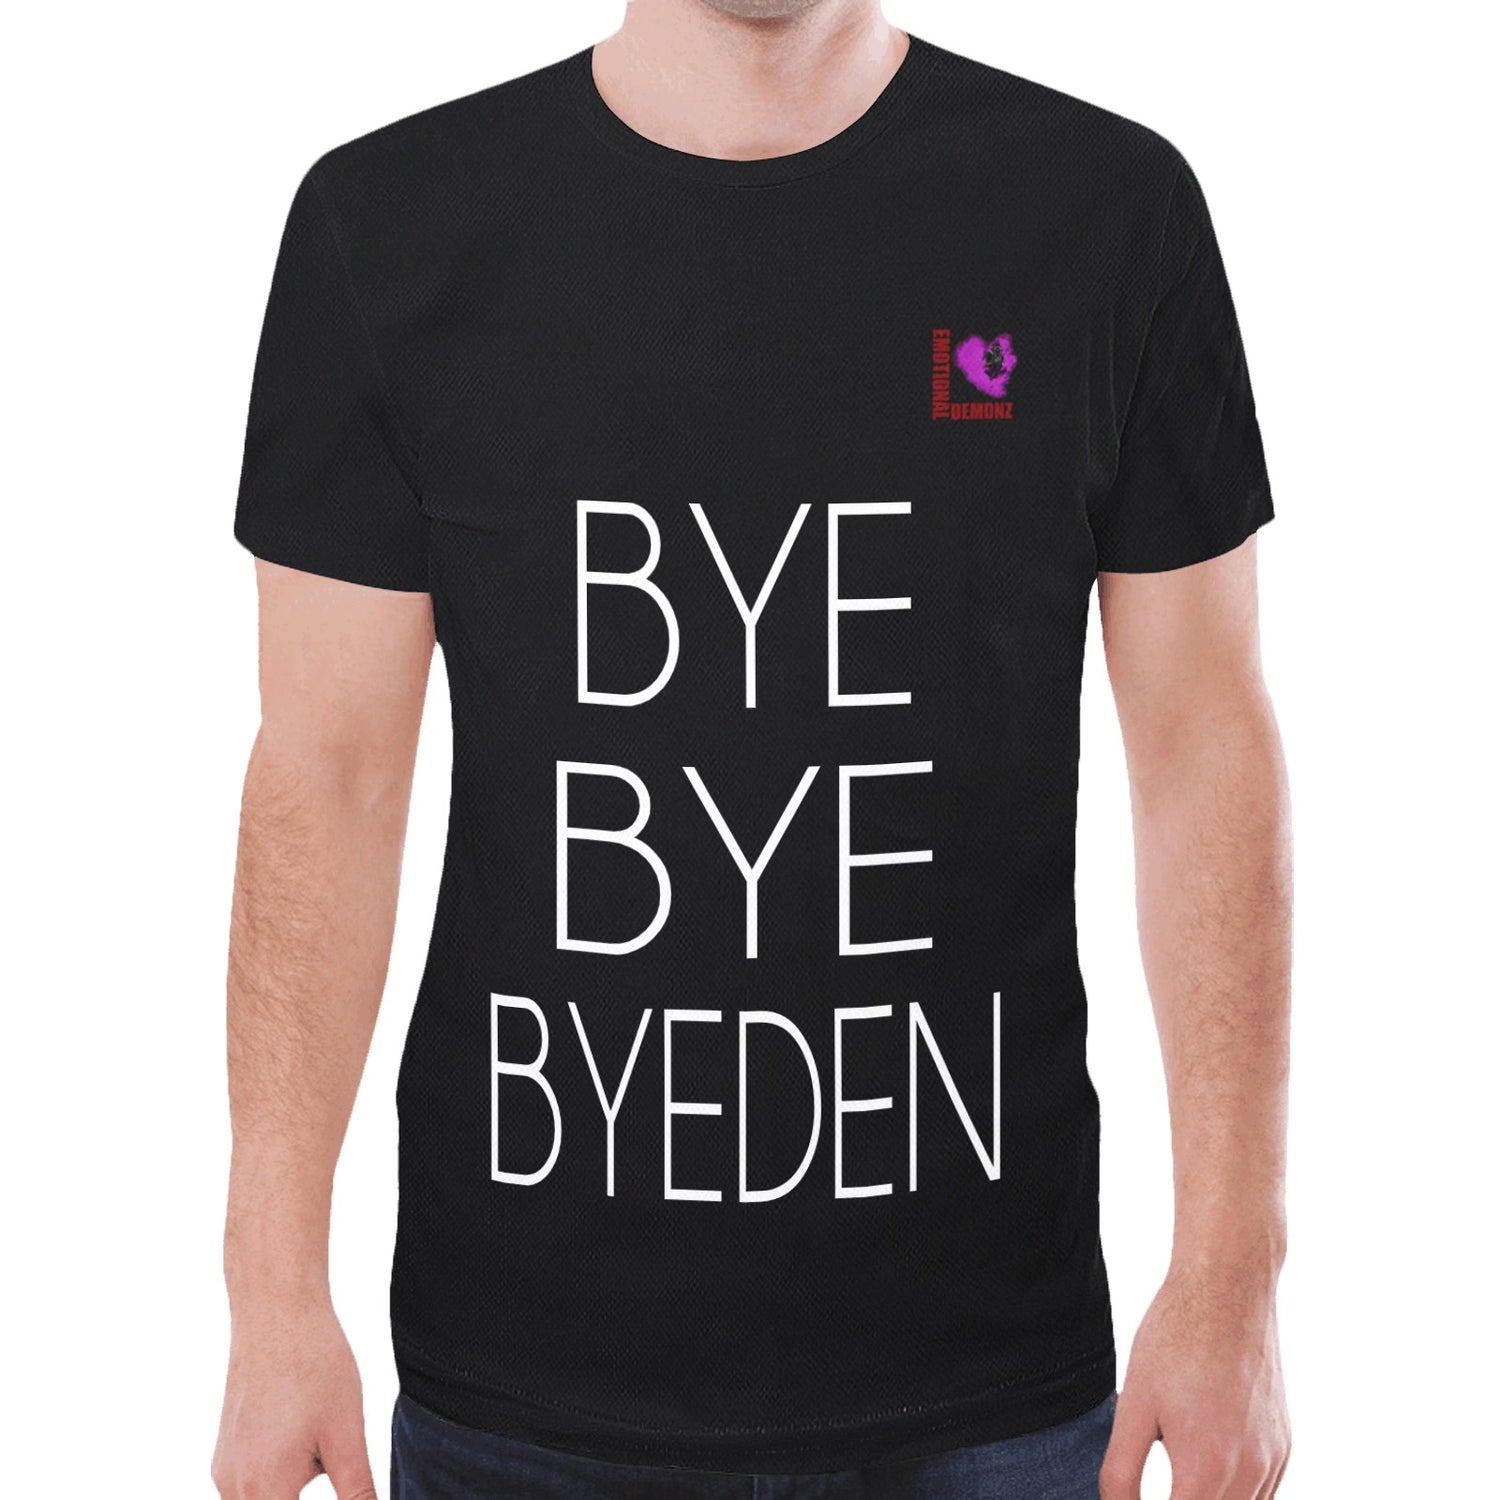 Bye Bye Byden Tshirt